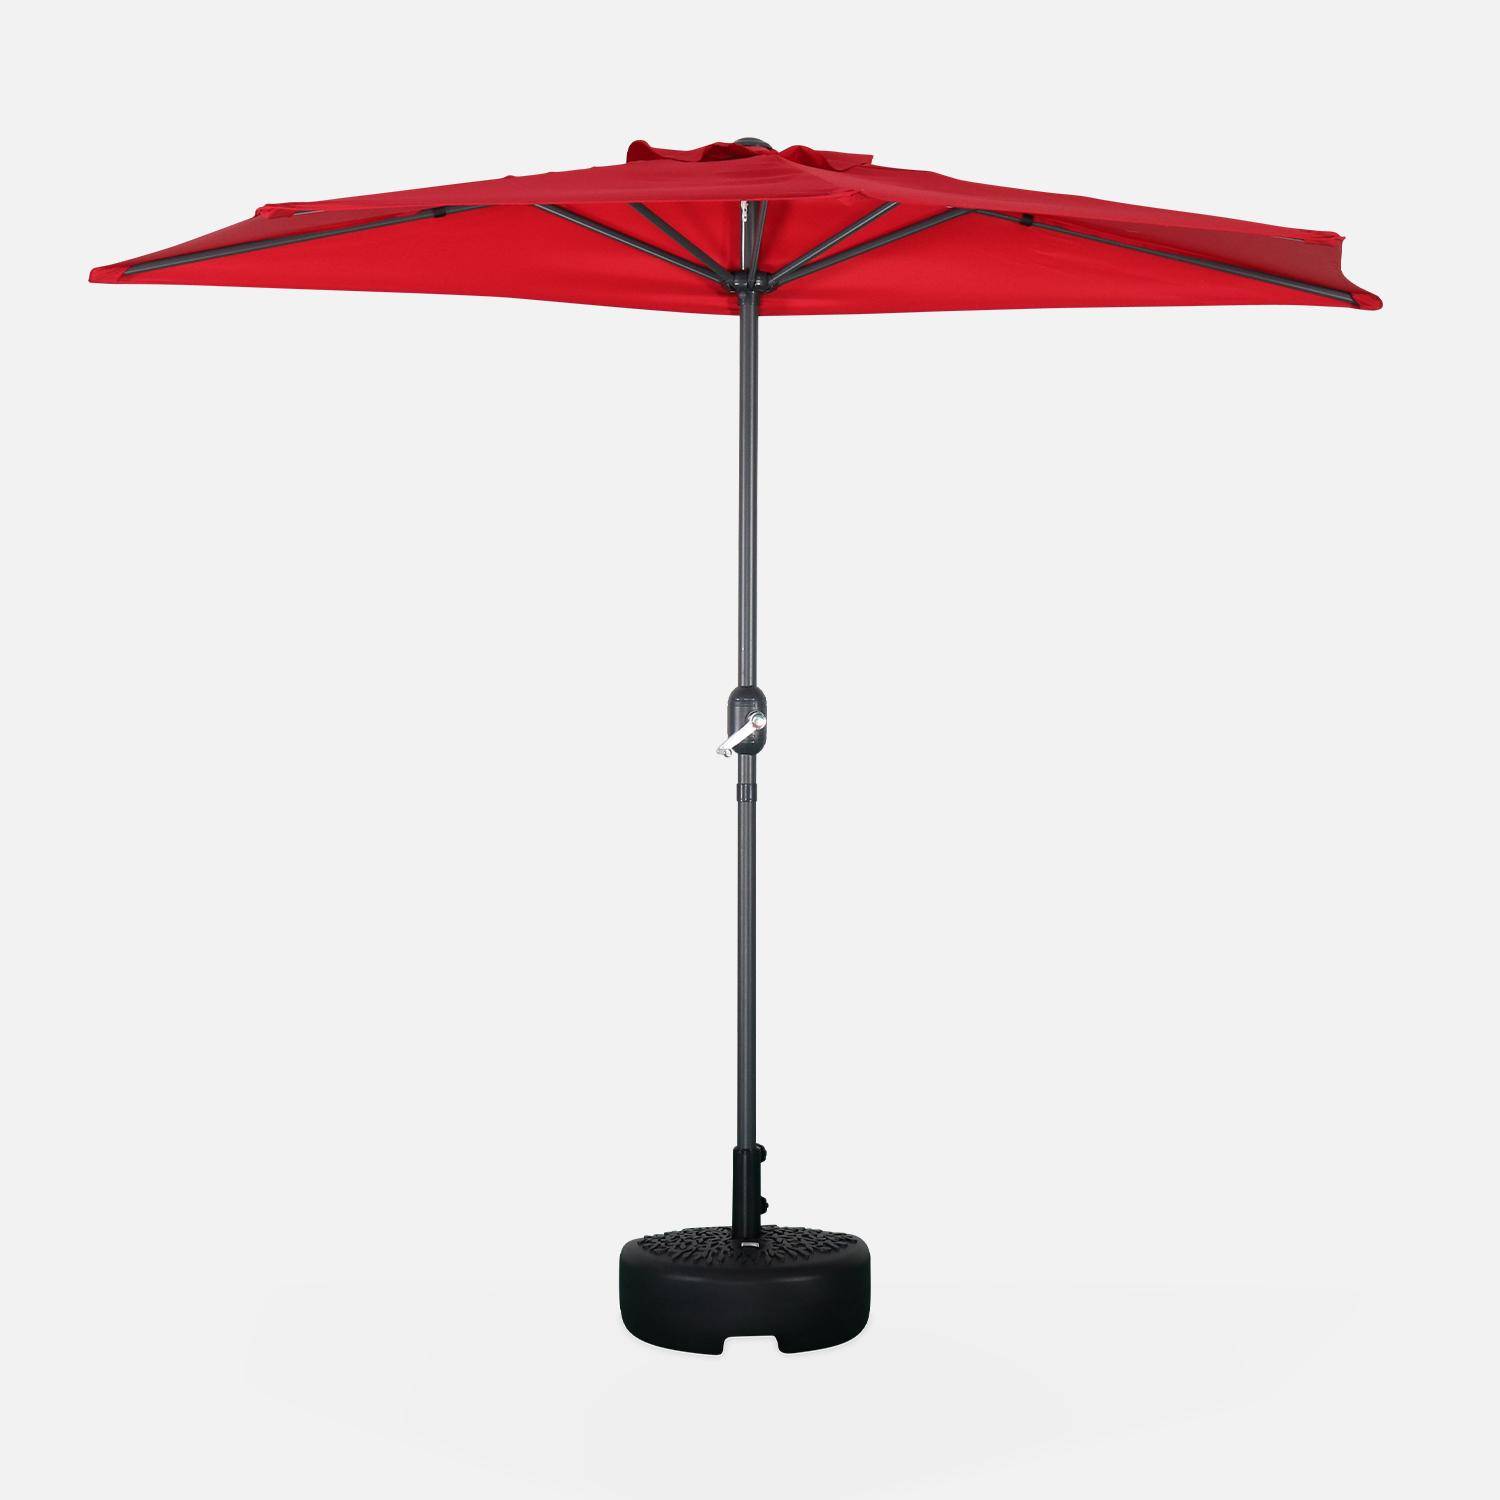  Parasol para balcón Ø250cm  – CALVI – Pequeño parasol recto, mástil en aluminio con manivela, tela color rojo Photo2